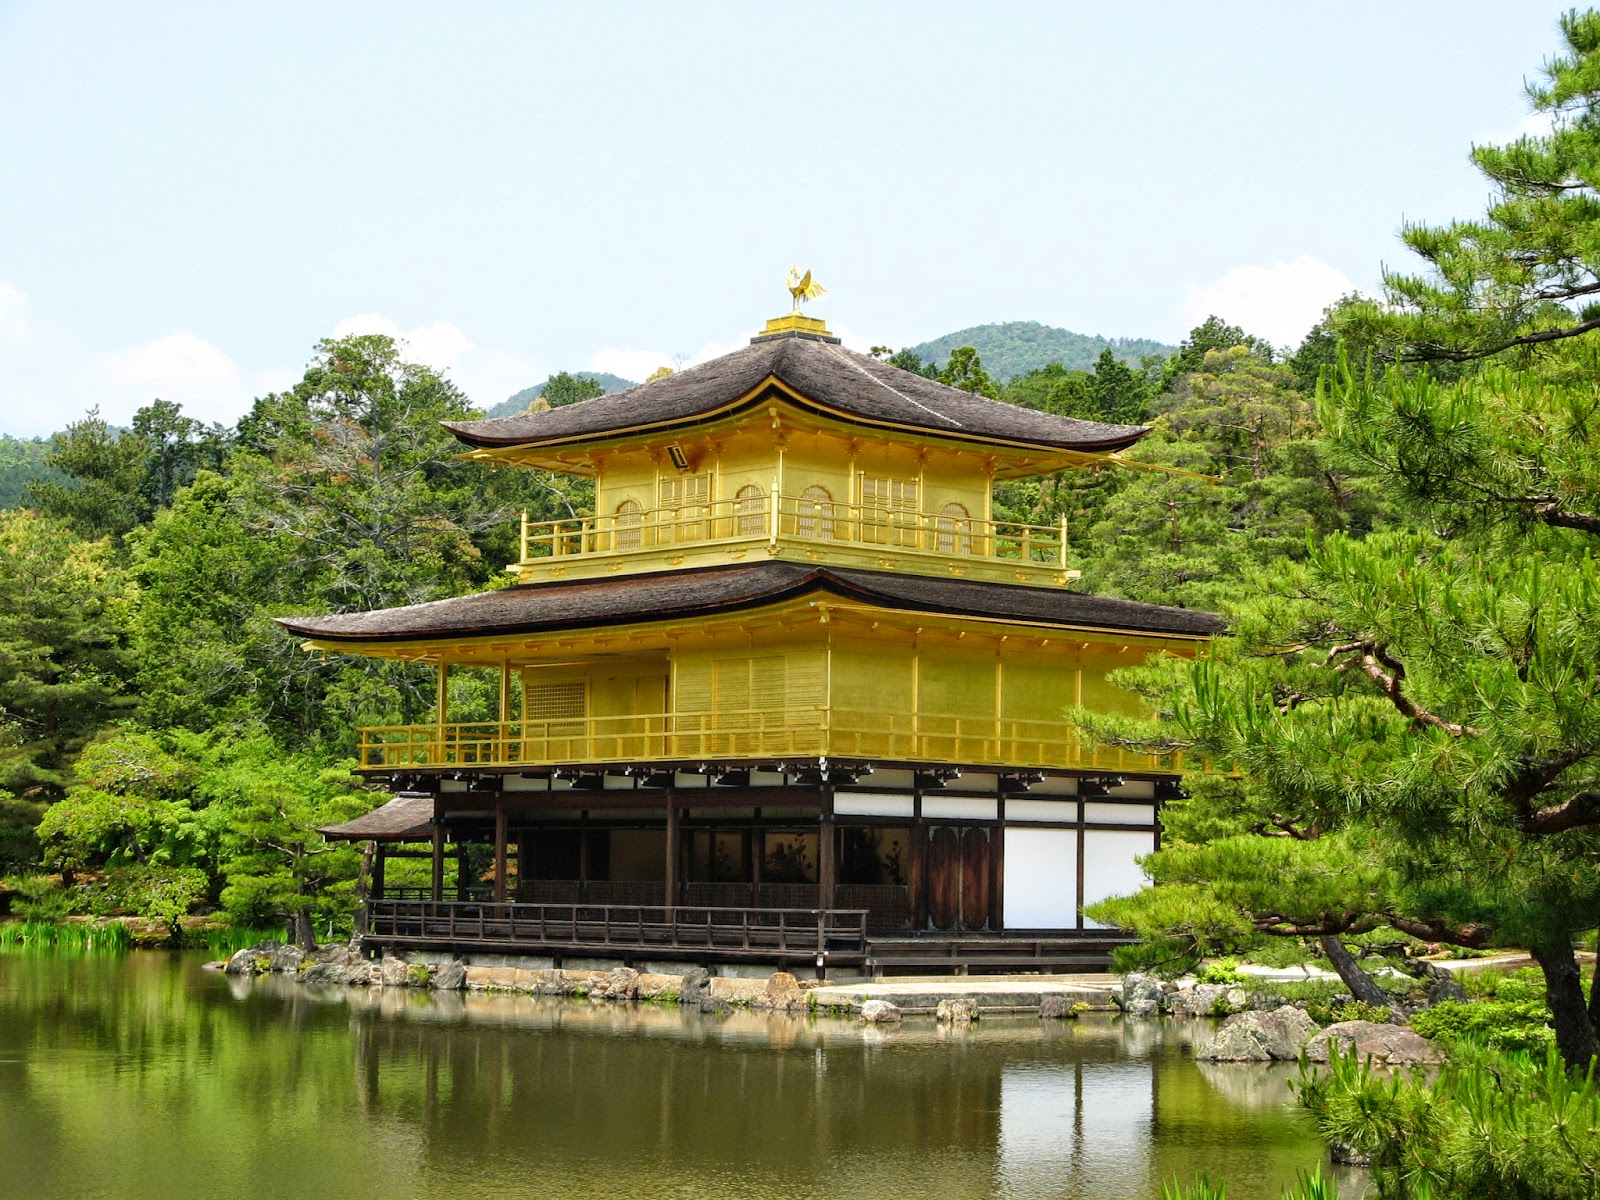 Golden Pavilion Kyoto Japan tour @ in-all-places